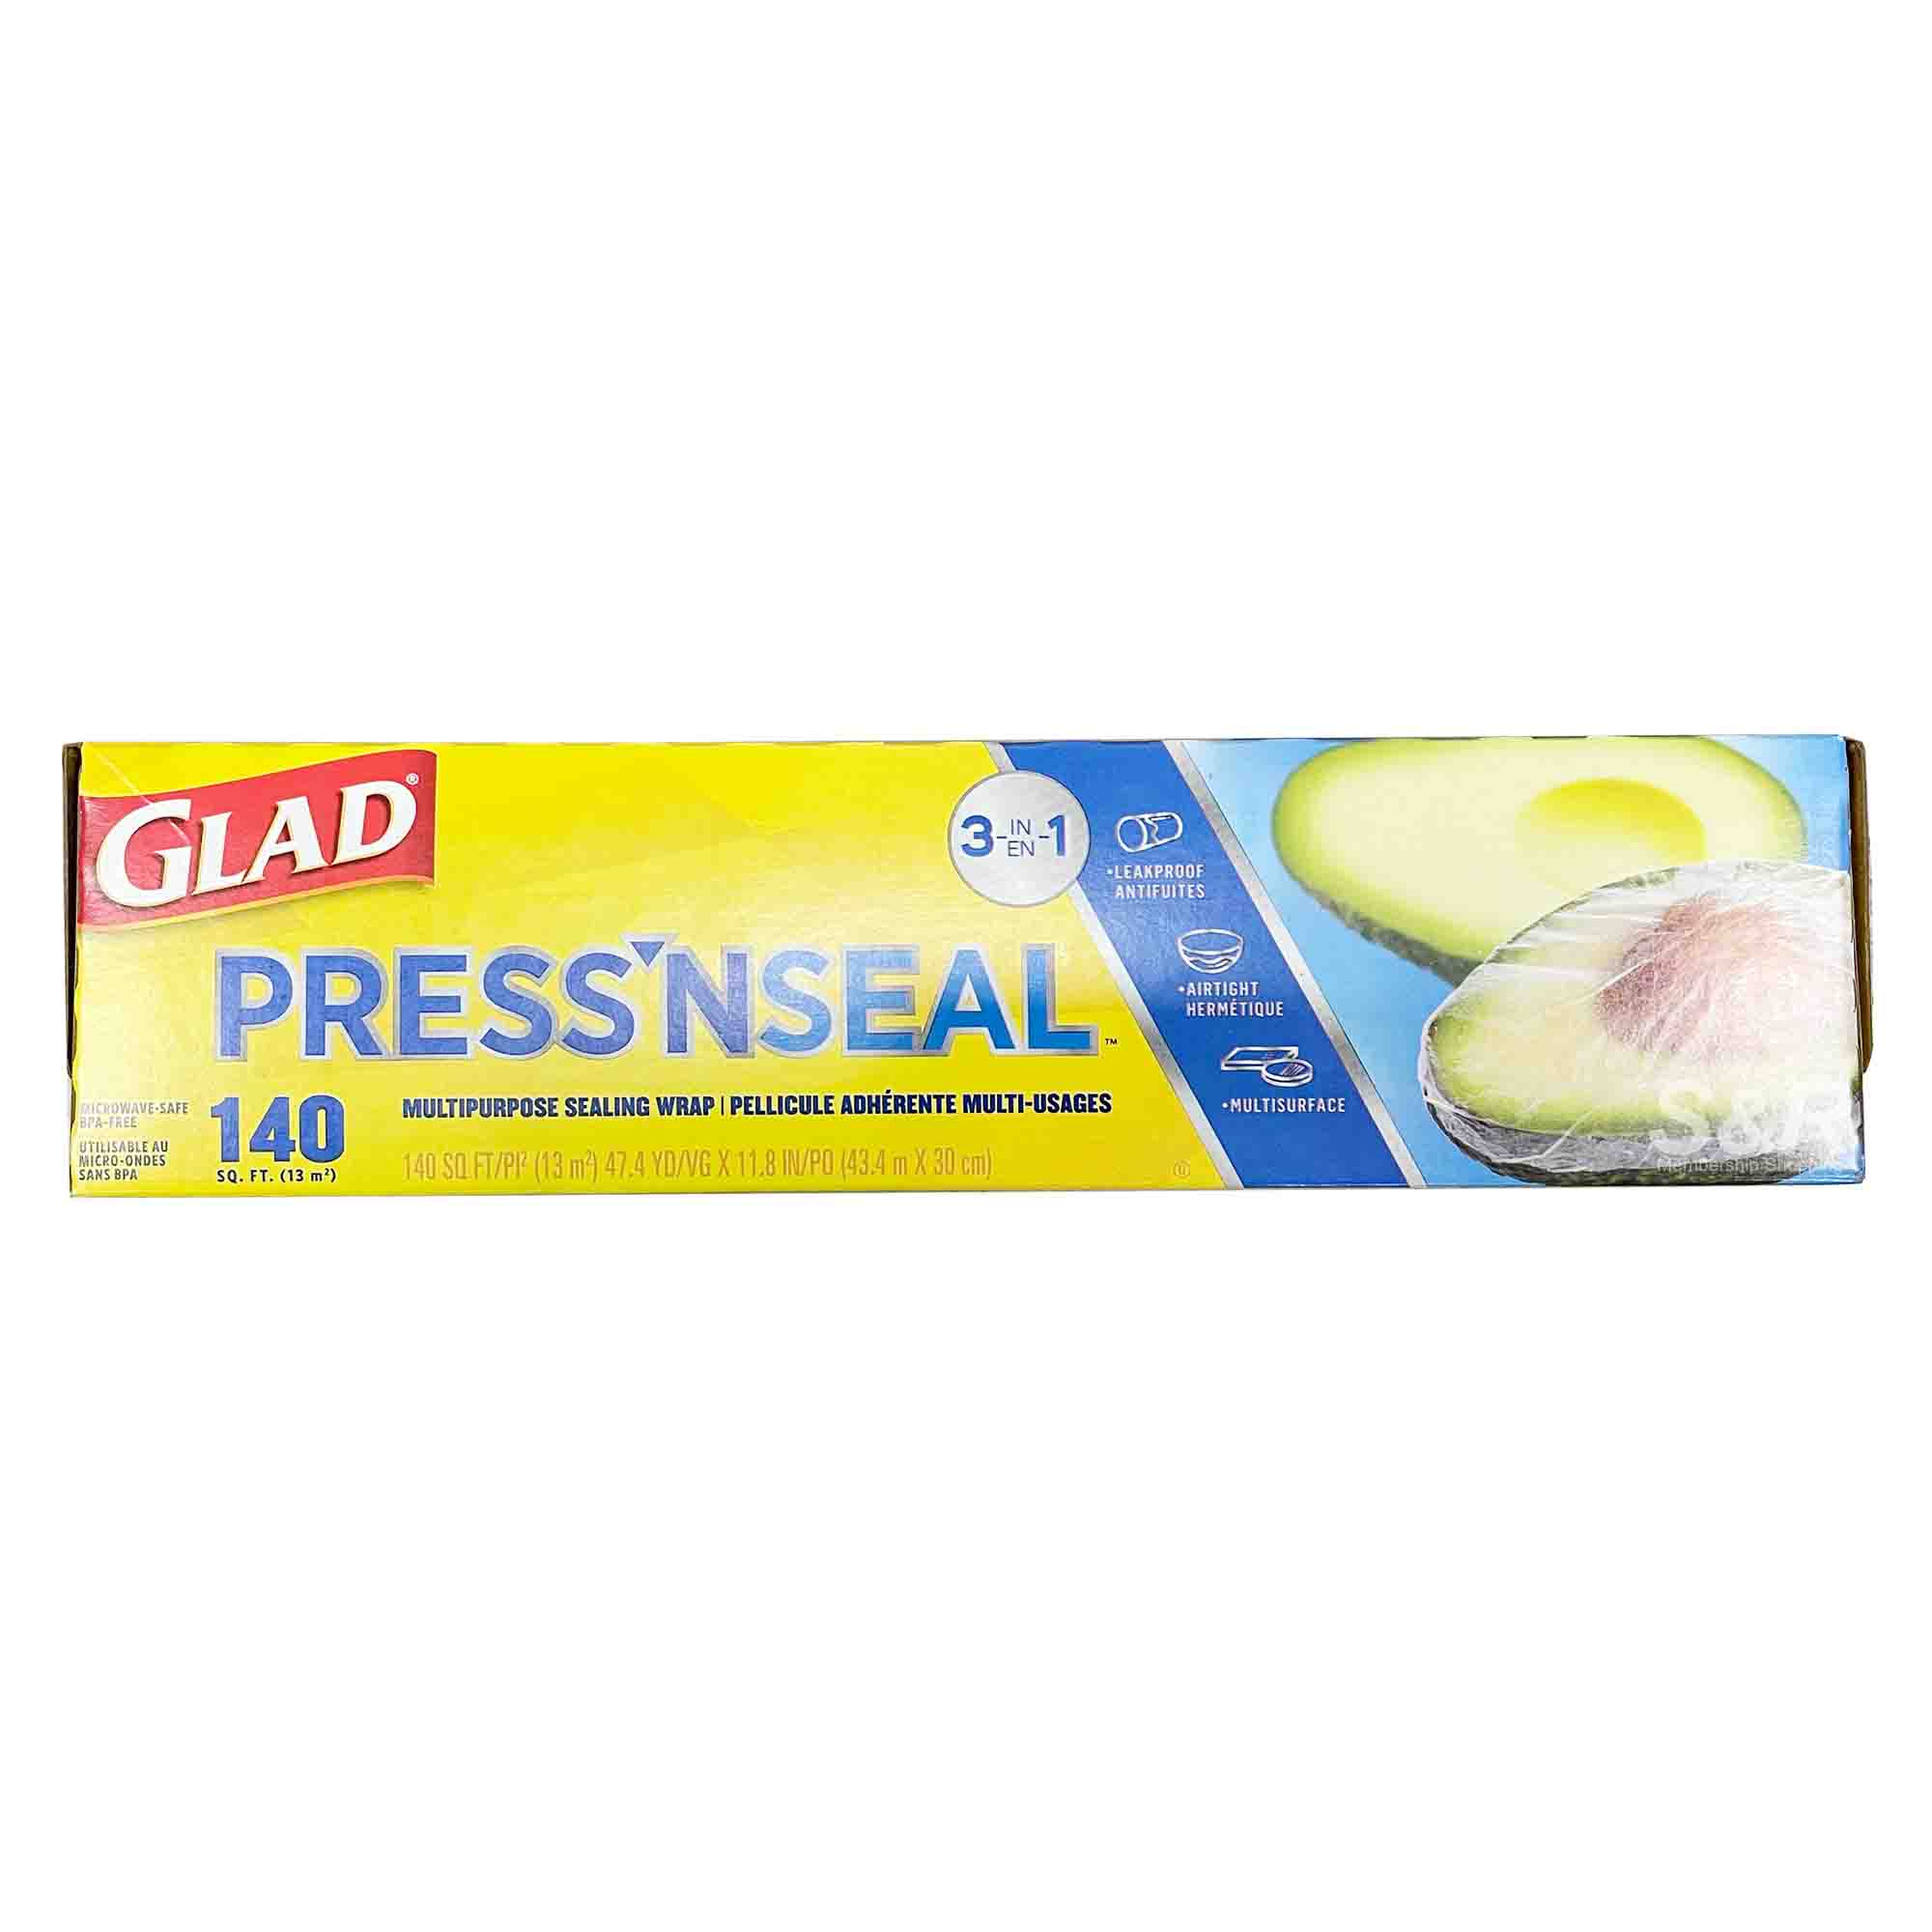 Glad Press 'N Seal Multipurpose Sealing Wrap 1pc